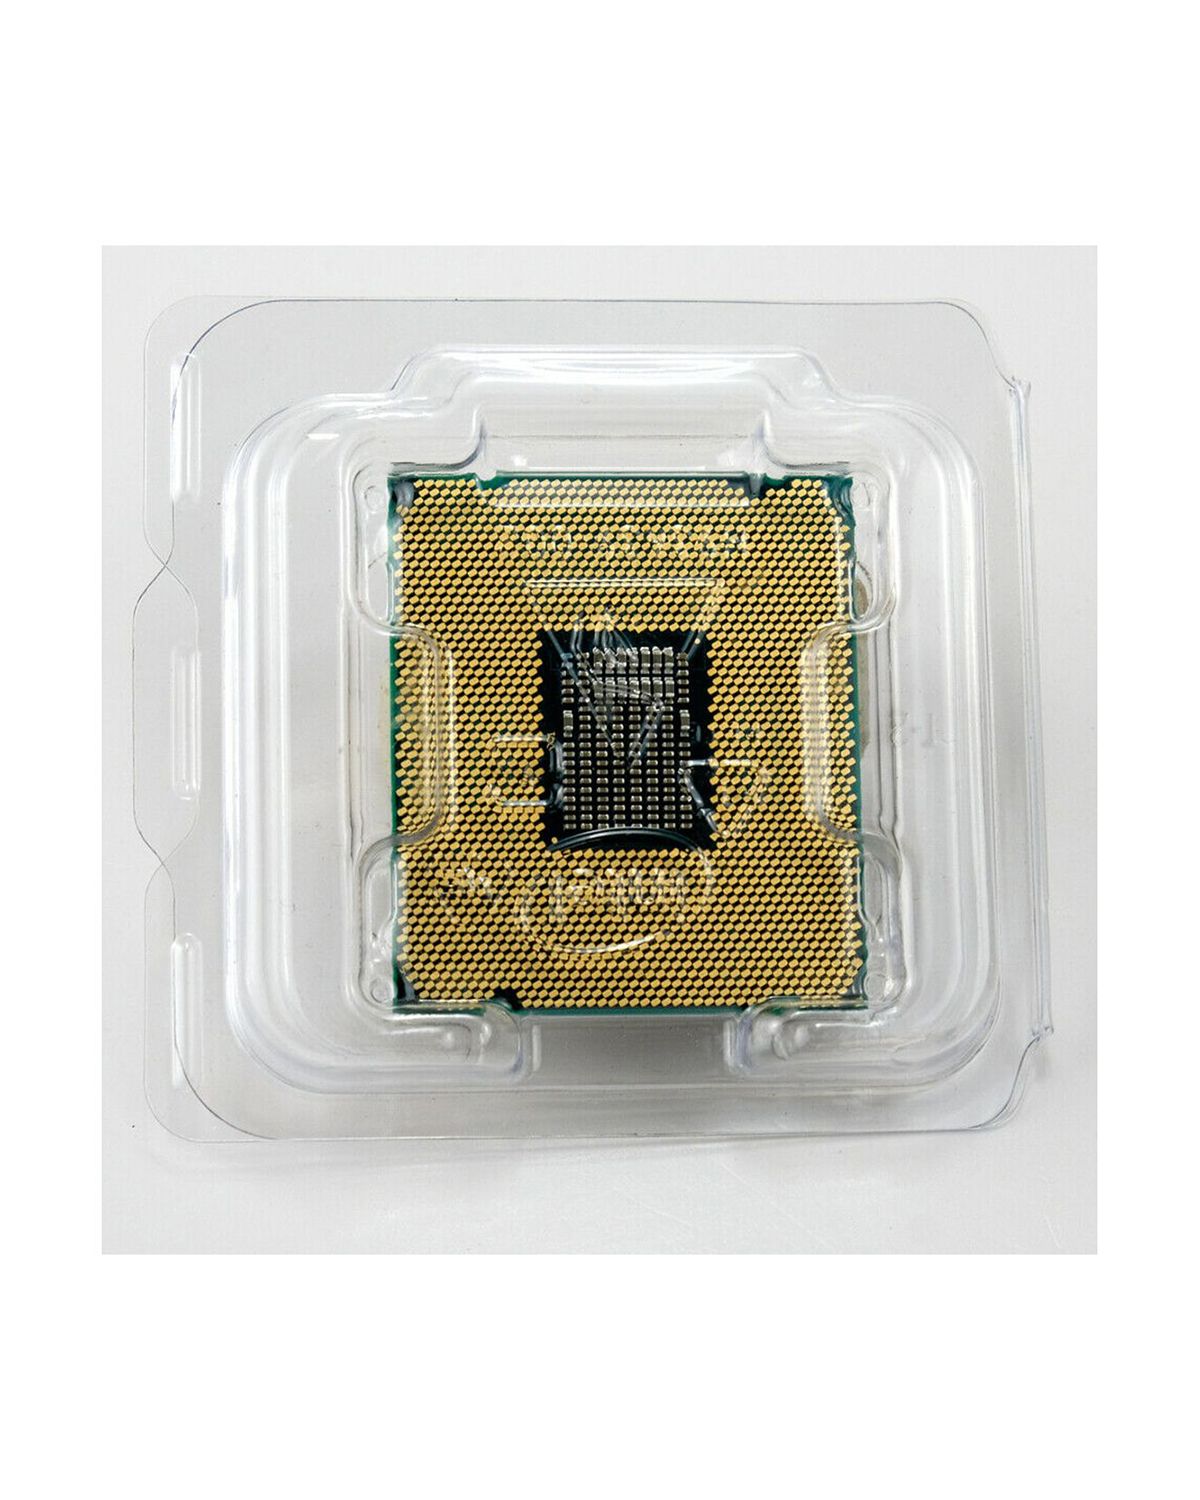 INTEL CORE I9-10980XE Extreme Edition Processor, 3 GHz, 18-Core $500.00 -  PicClick